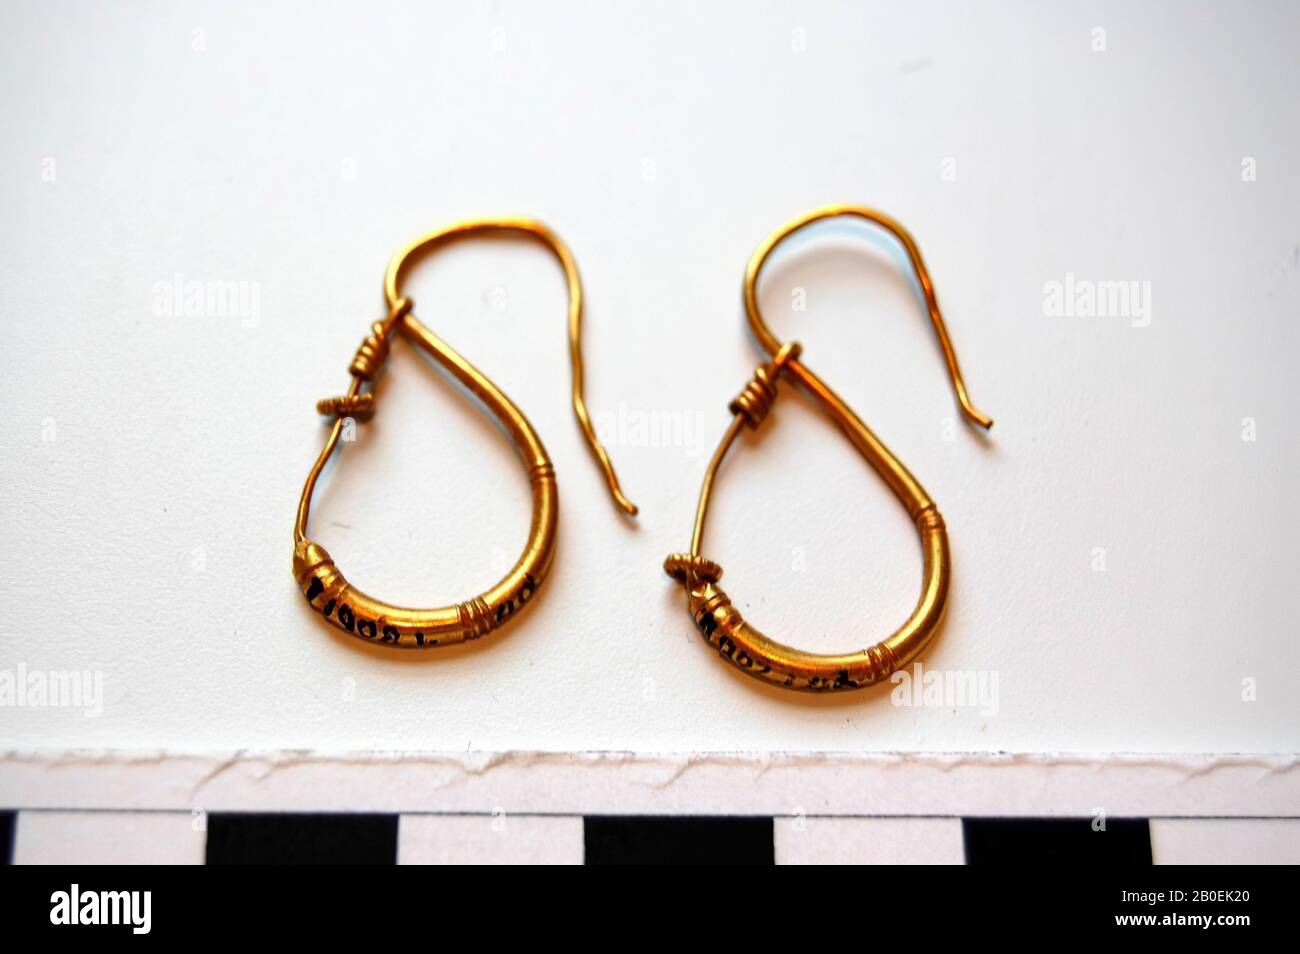 Boucles d'oreilles dorées en forme de S avec anneau de filigree, boucles d' oreilles, or, 3 x 2 cm, époque impériale romaine, Bulgarie Photo Stock -  Alamy